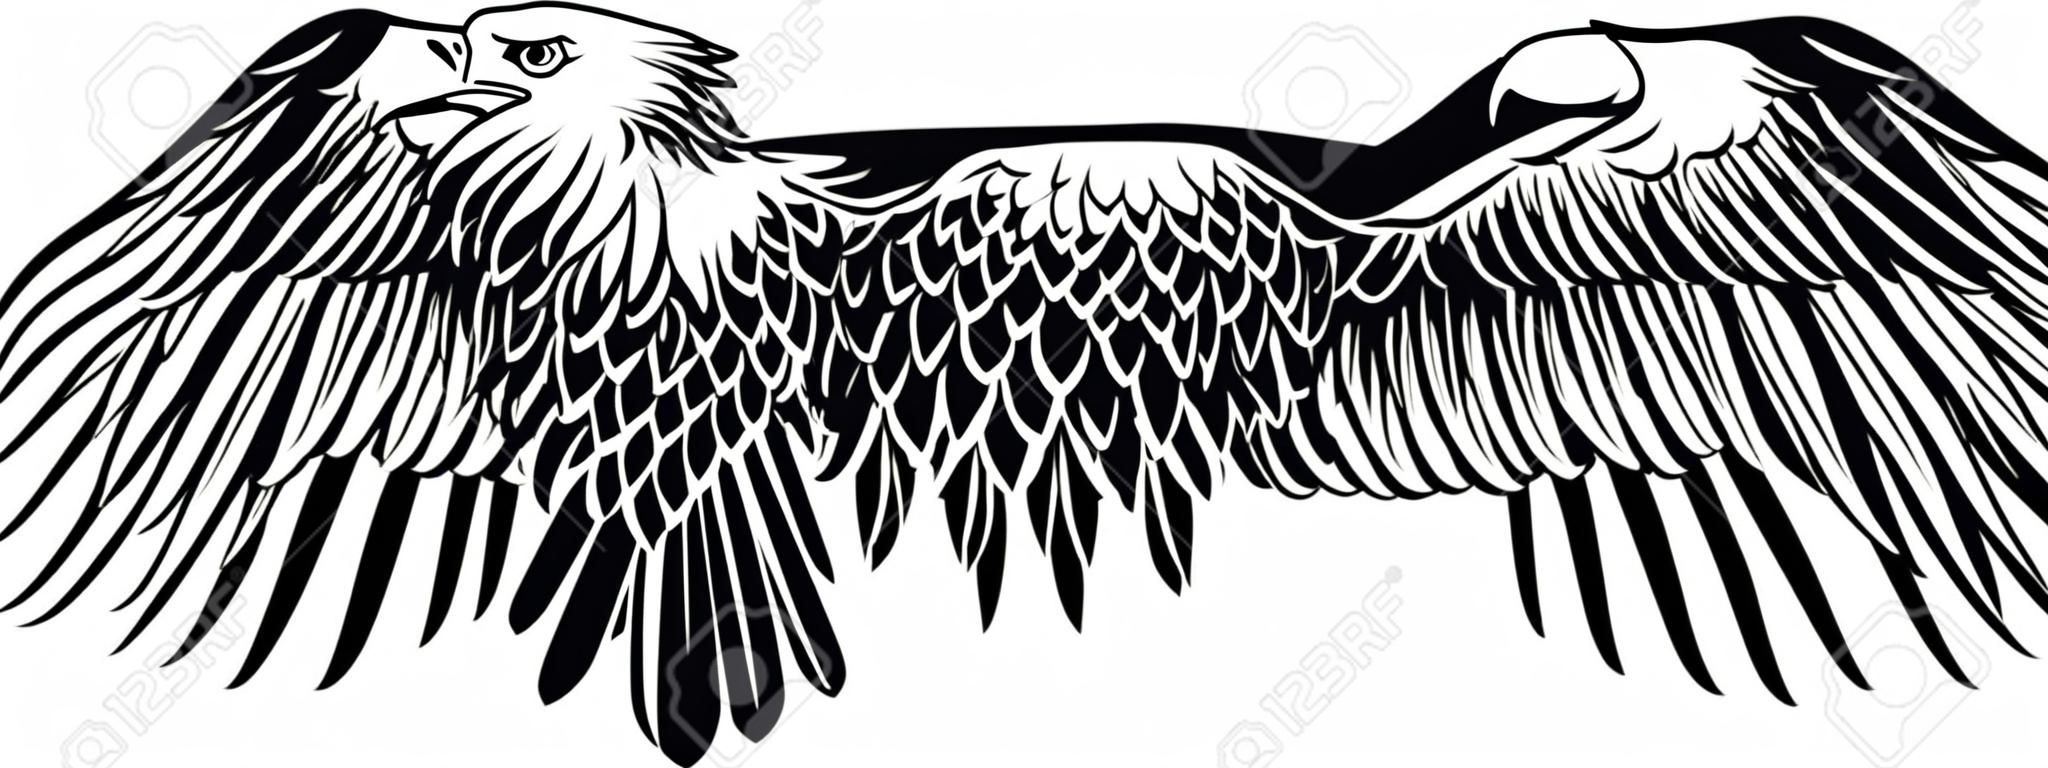 Imagen vectorial de un águila con las alas rectas